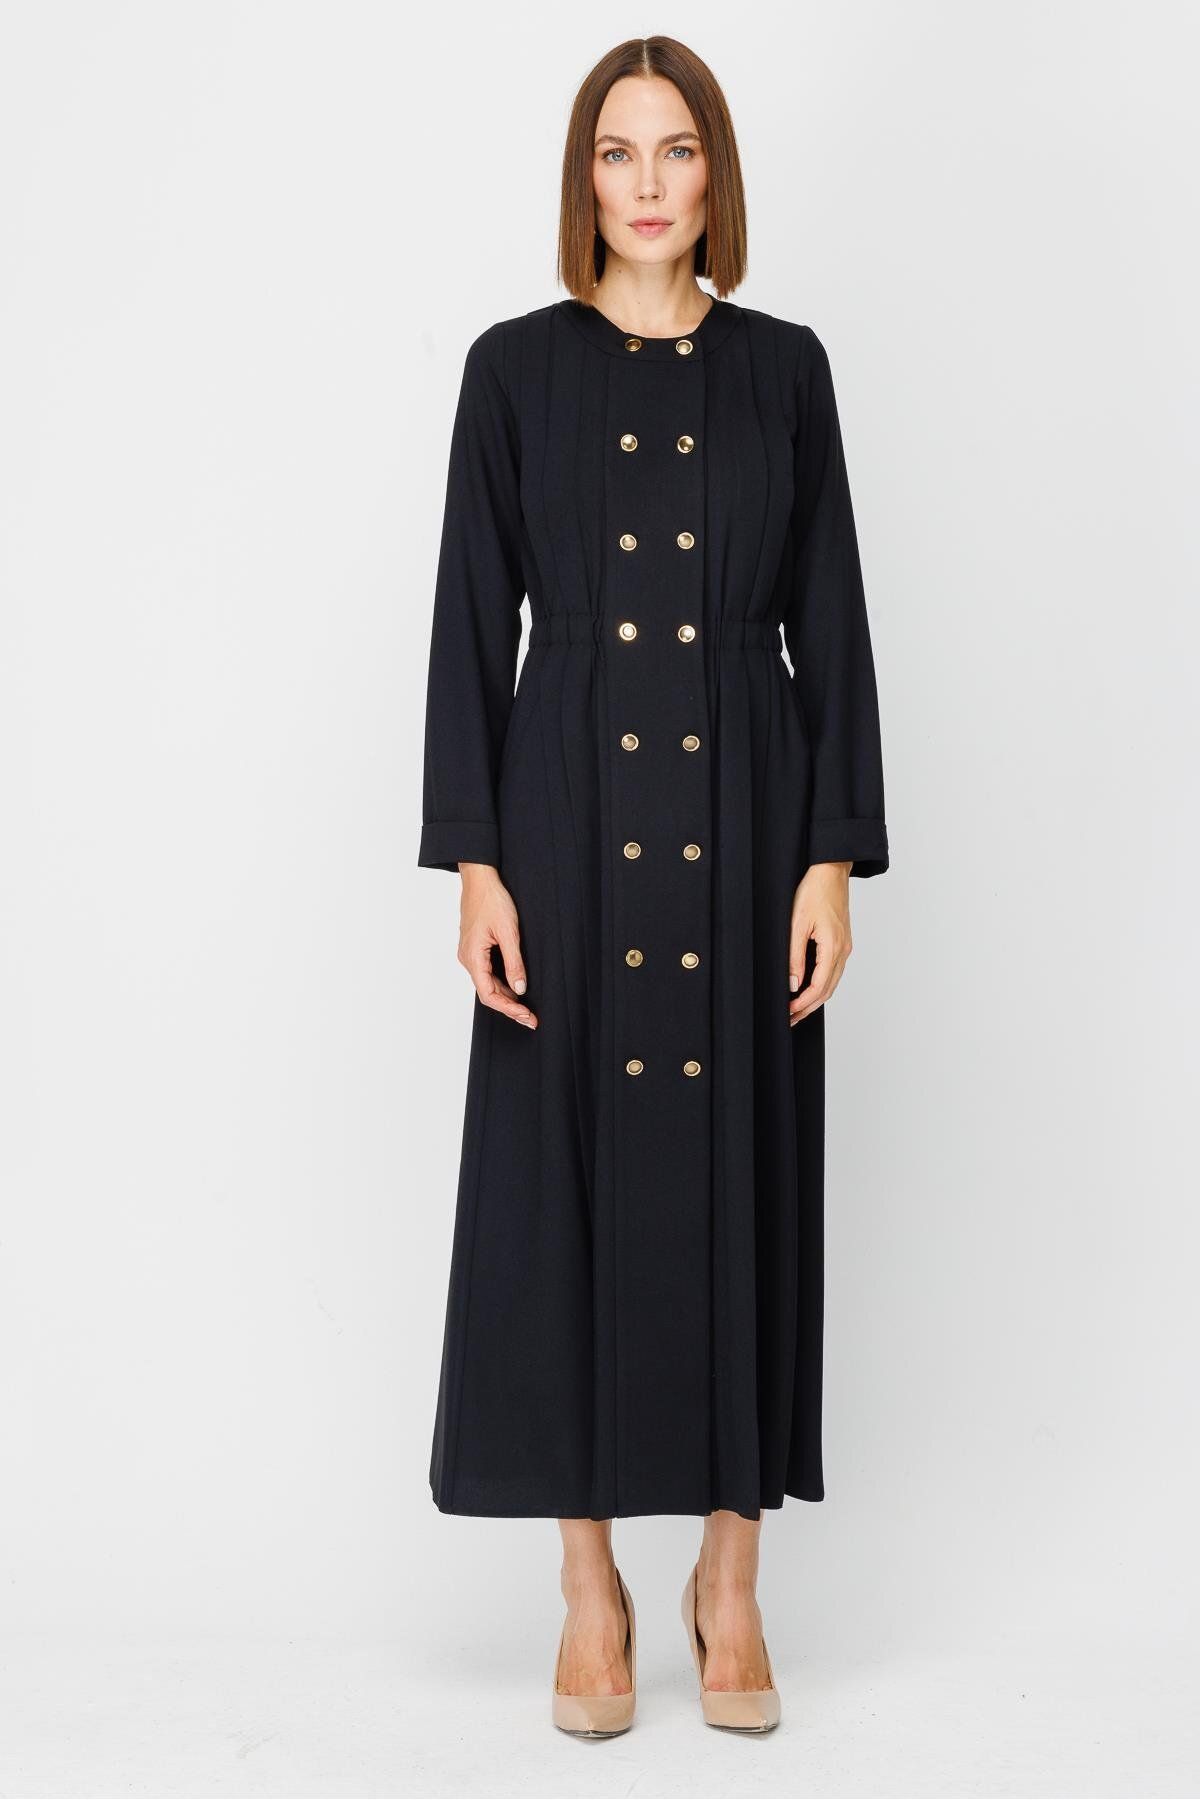 accort Düğme Detaylı Uzun Krep Elbise - SİYAH